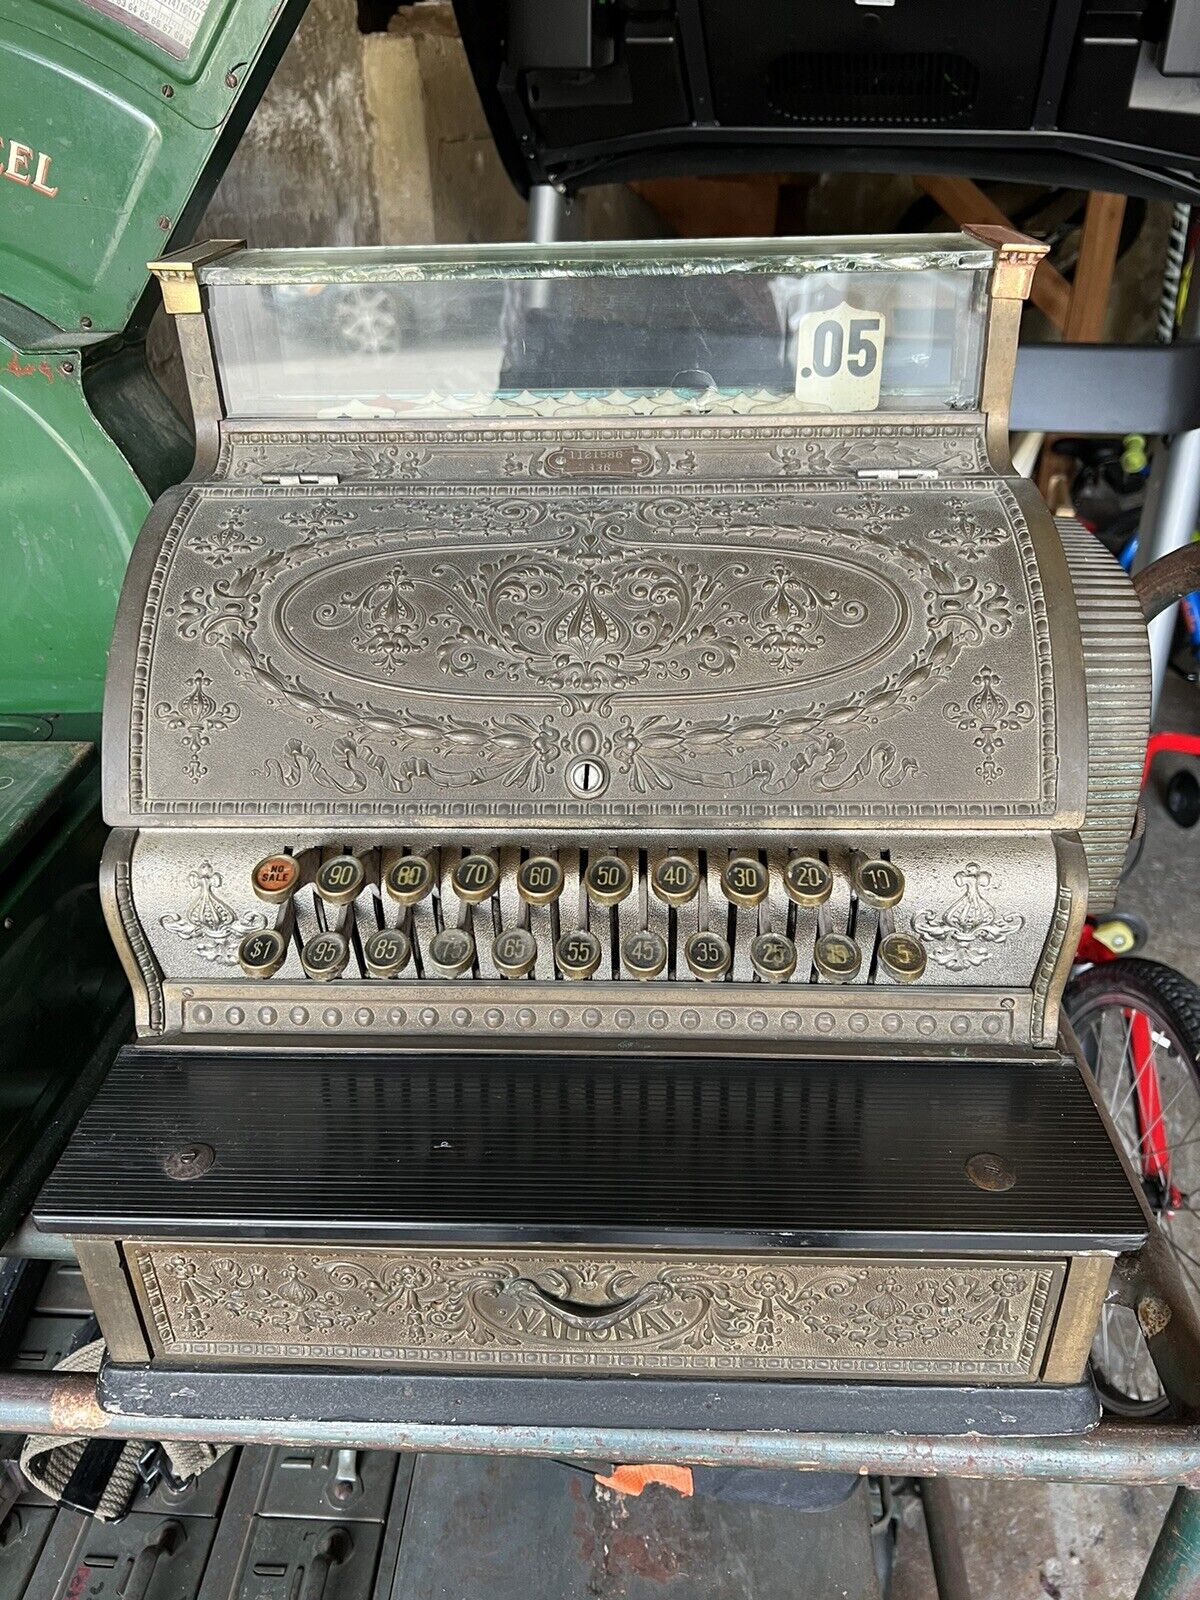 Antique National cash register Model 336 from 1918